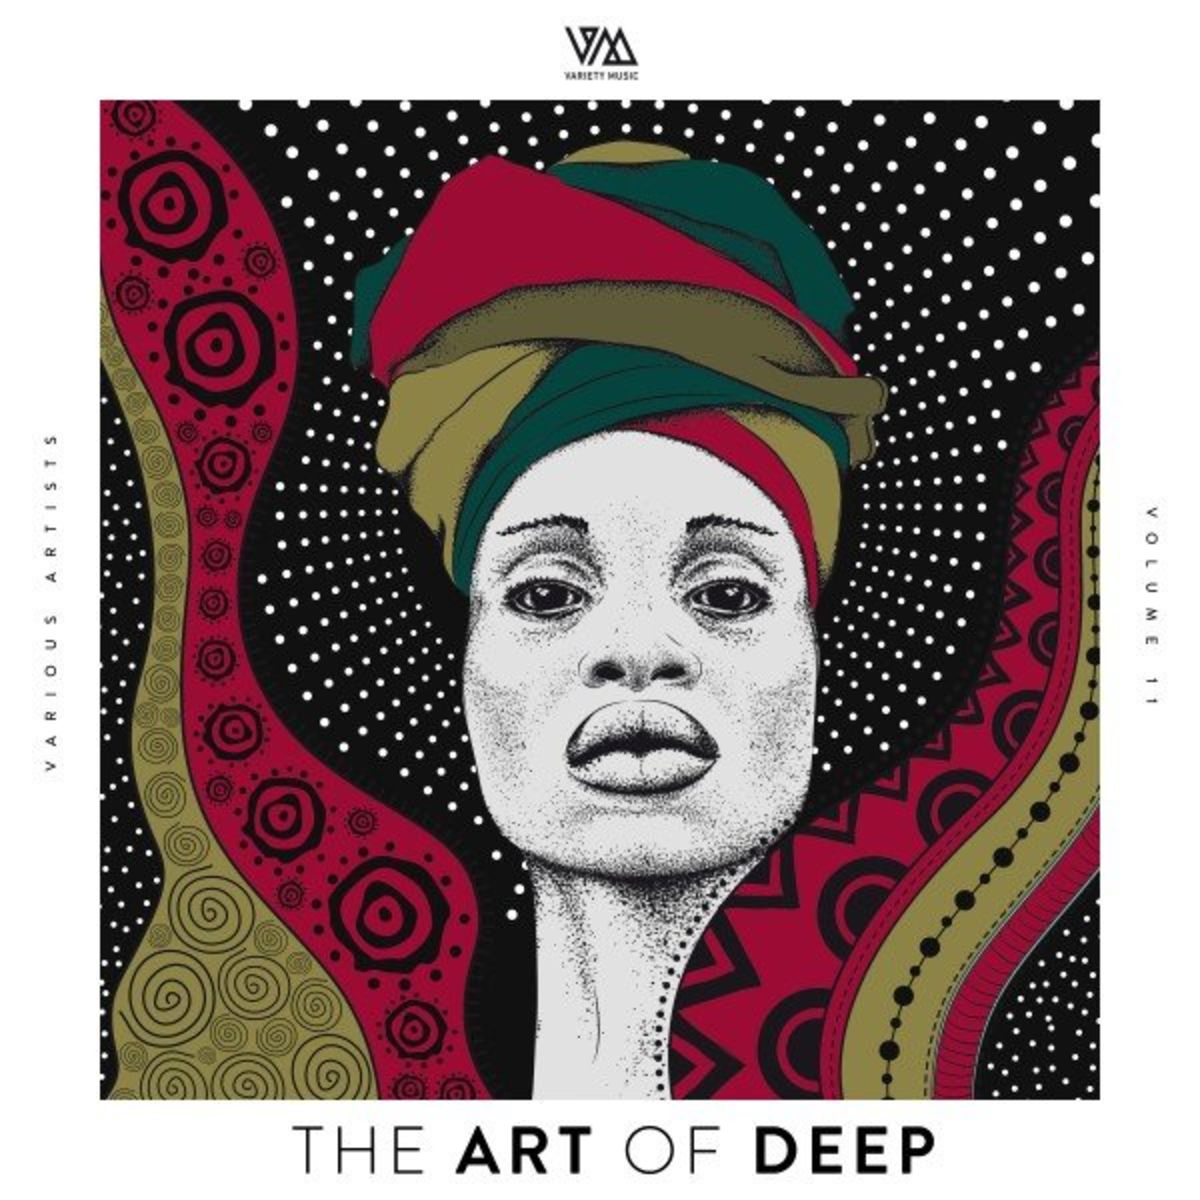 VA - The Art of Deep, Vol. 11 [VMCOMP793]